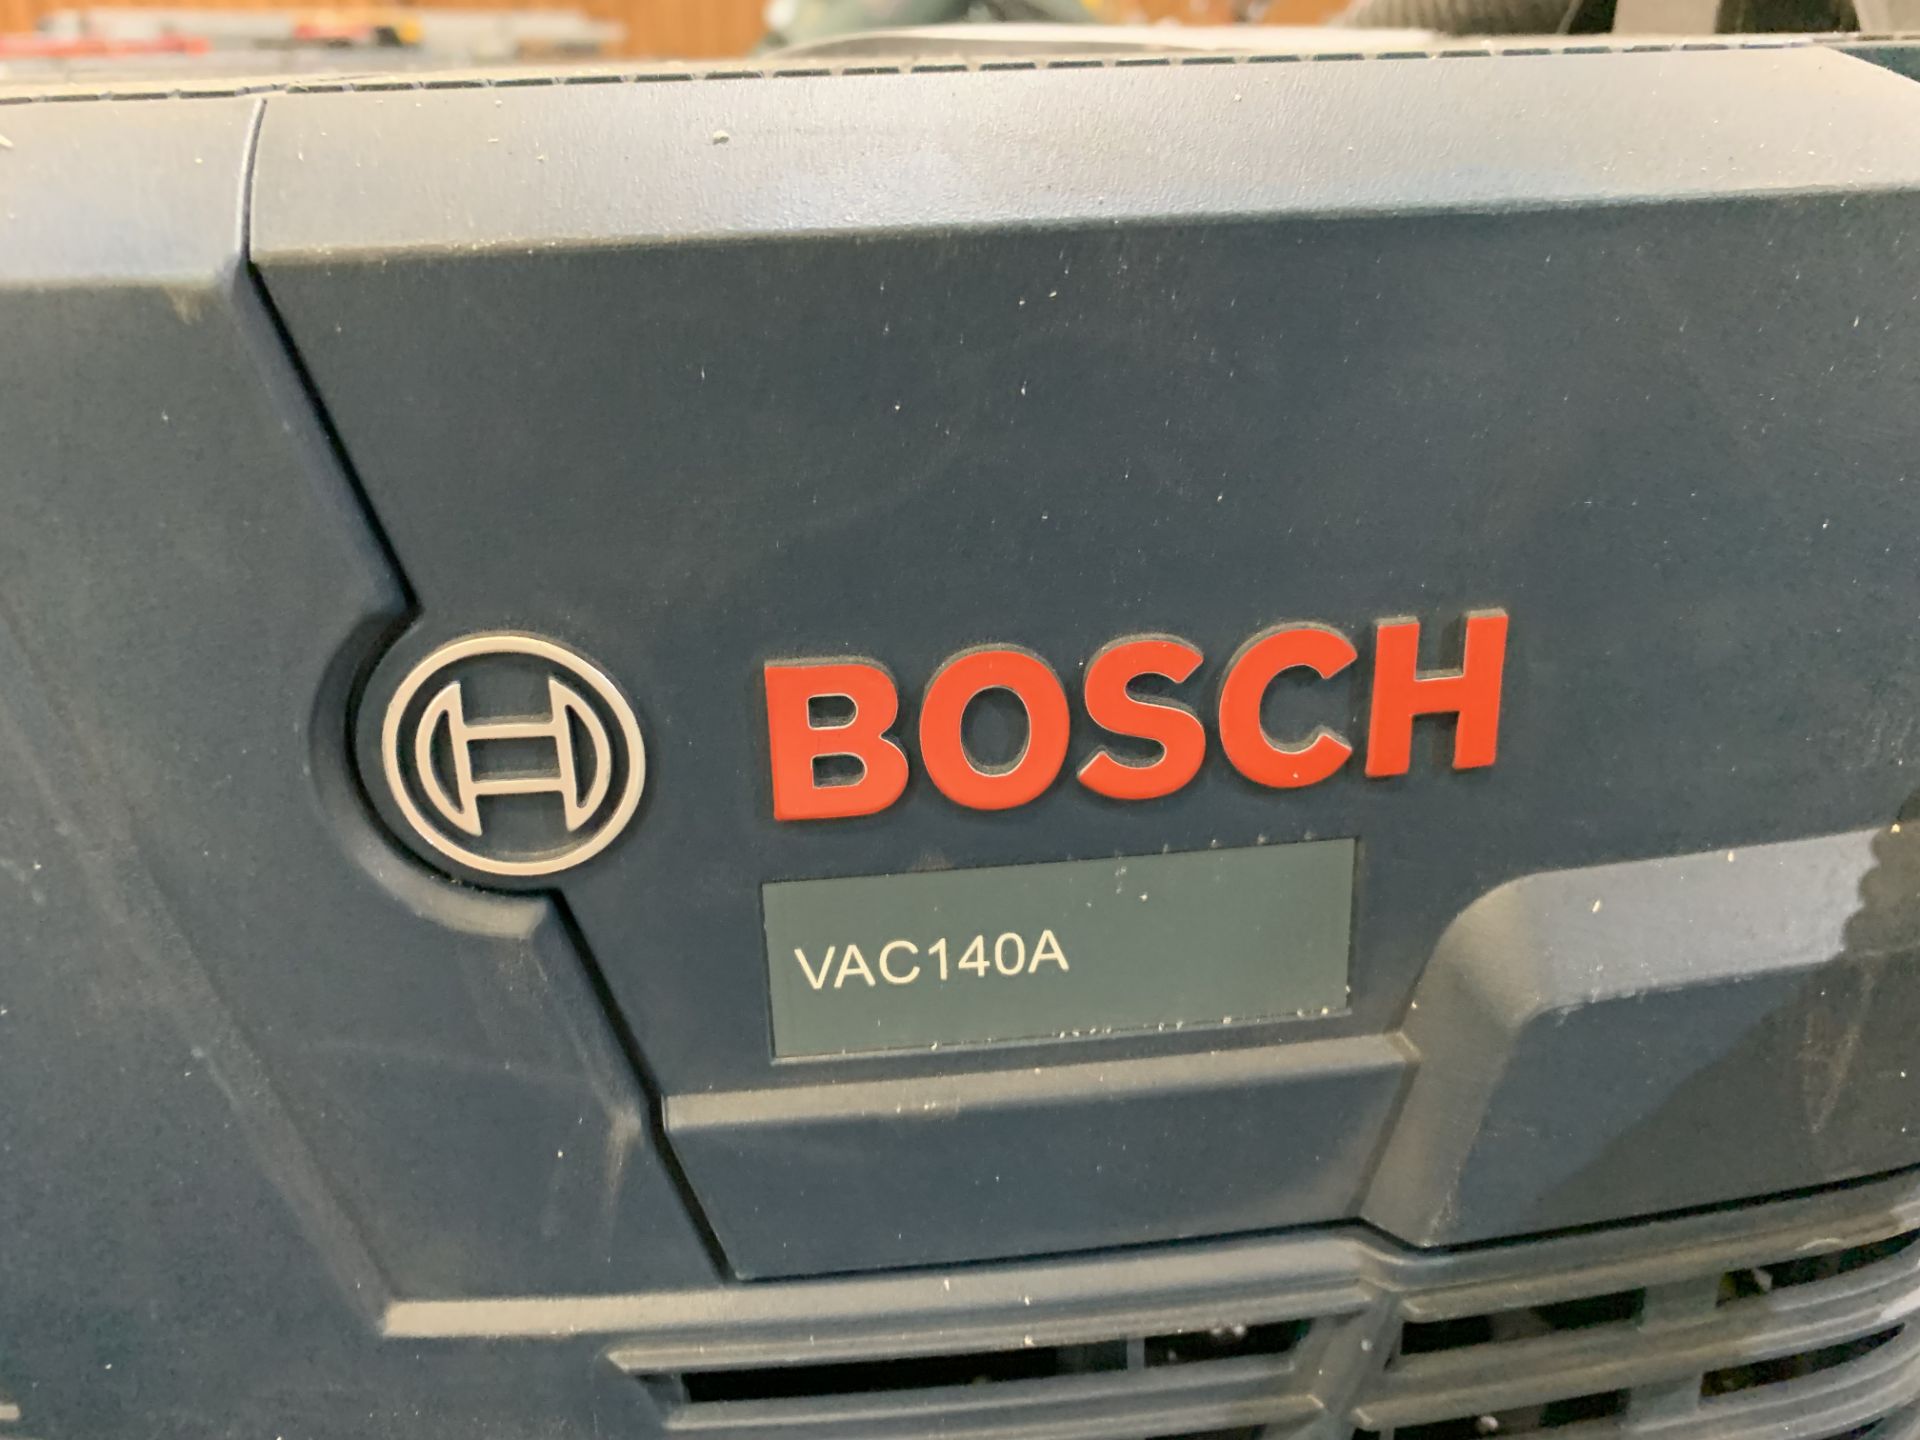 Bosch Hepa Shop Vac Model VAC140A - Image 2 of 2